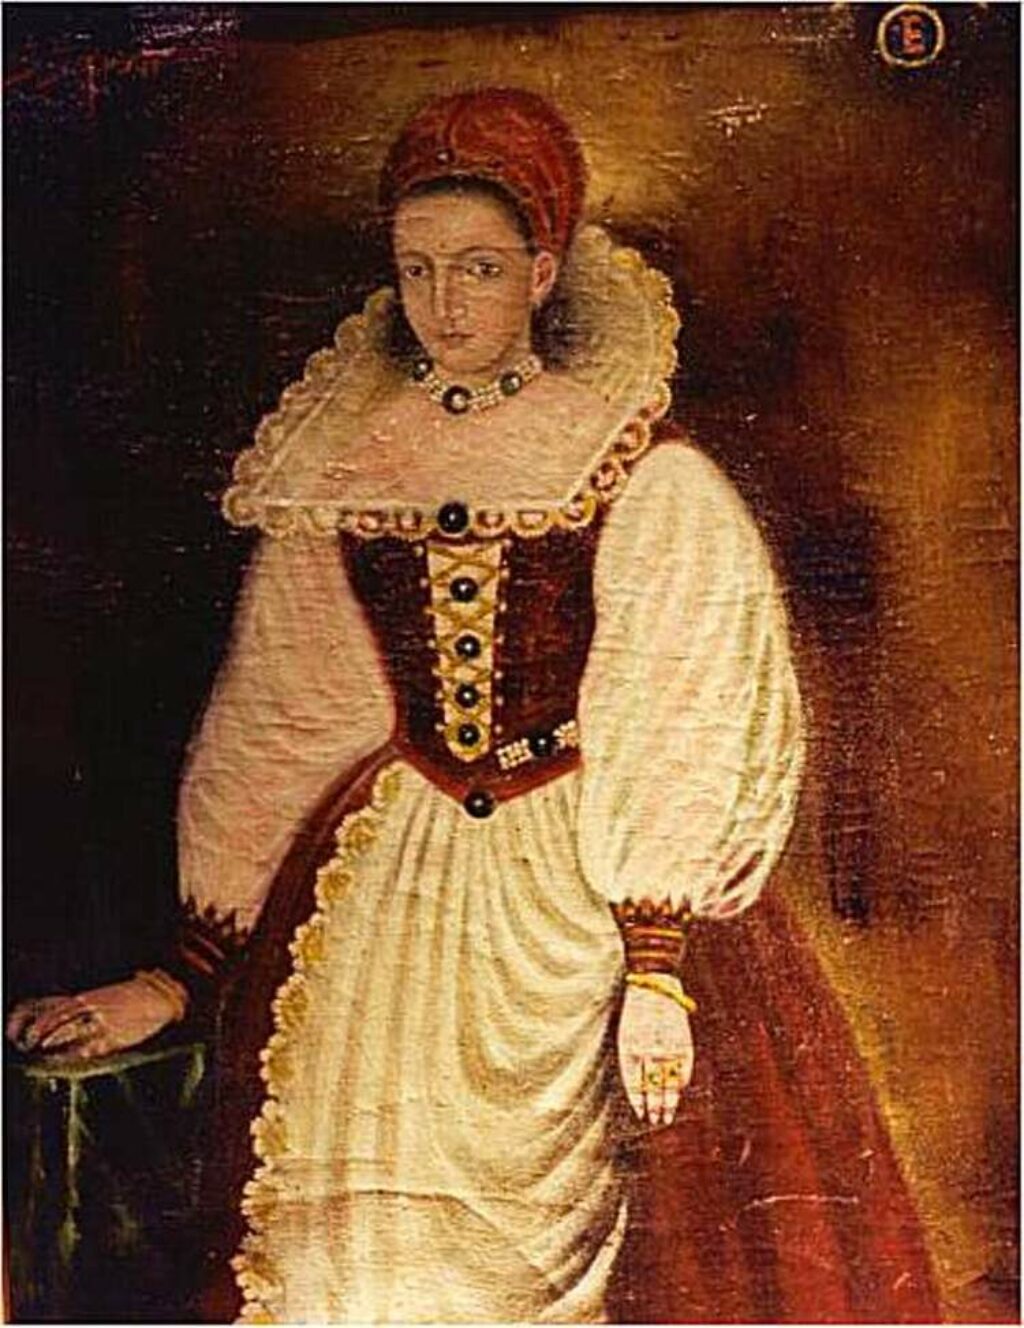 Retrato de Elizabeth Bathory, la condesa sangrienta.